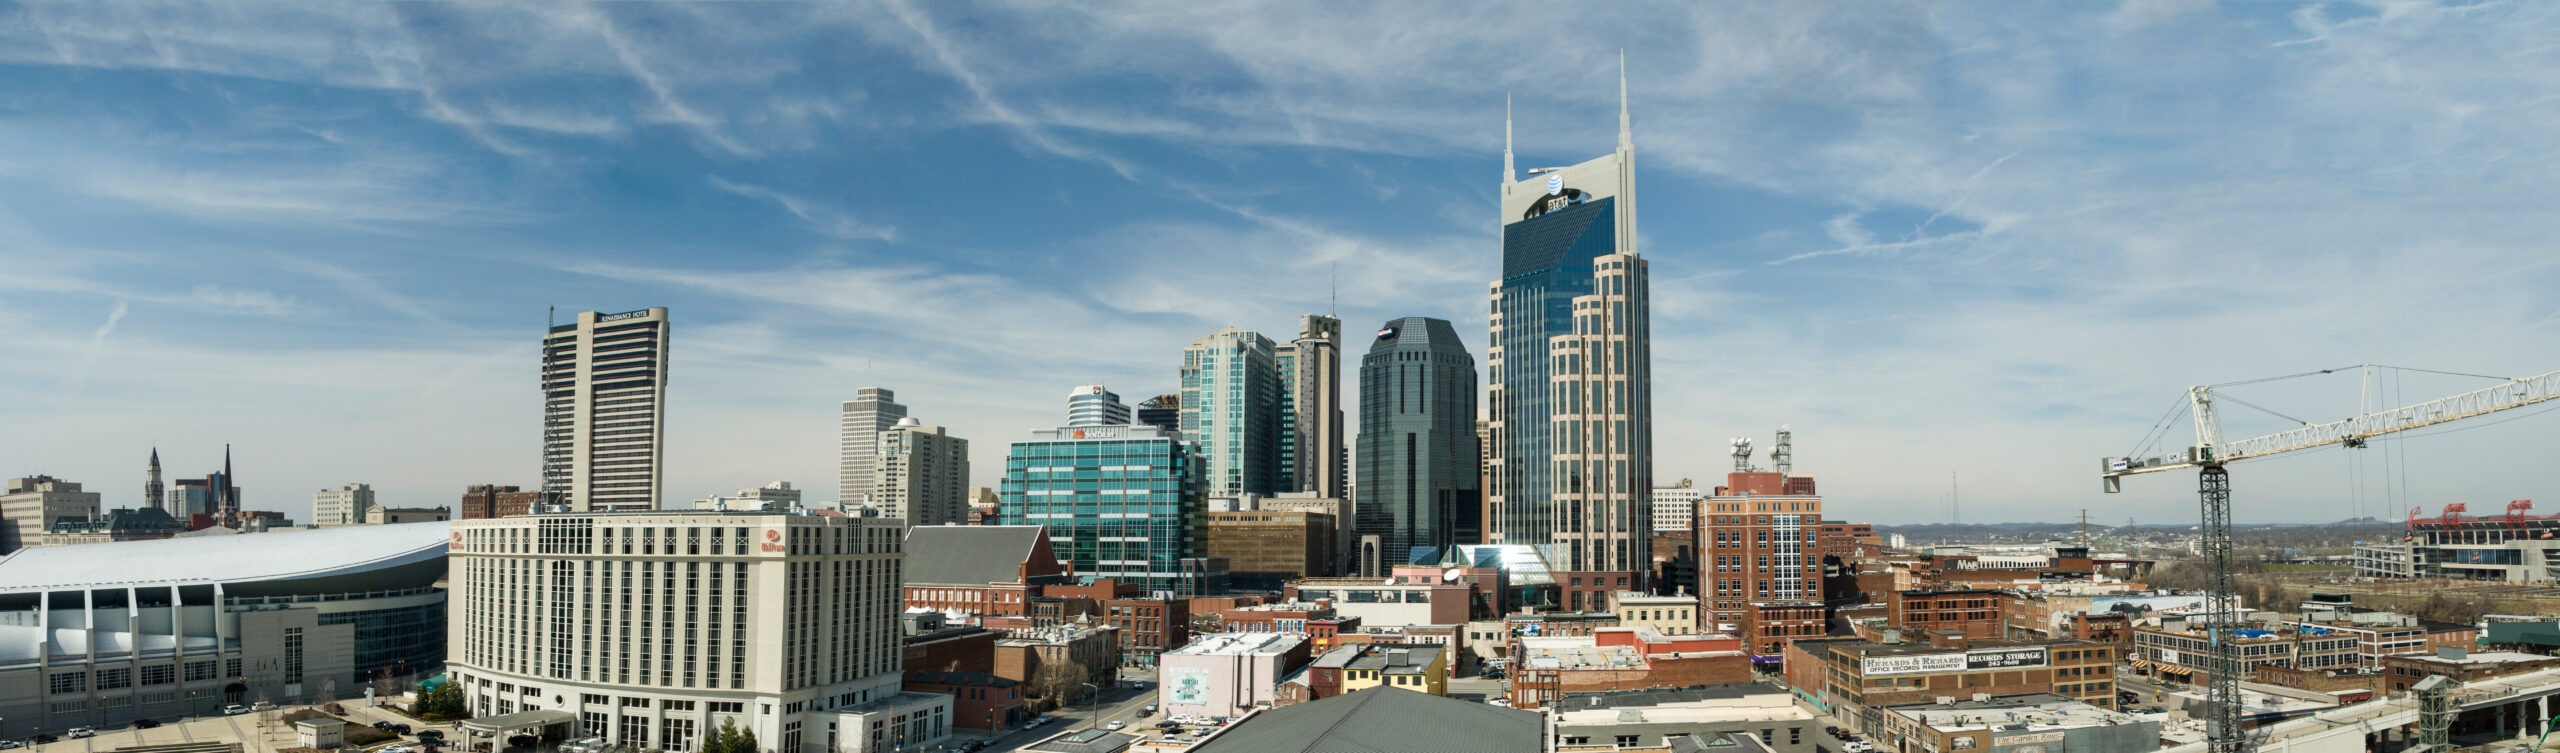 Nashville Skyline with Services header